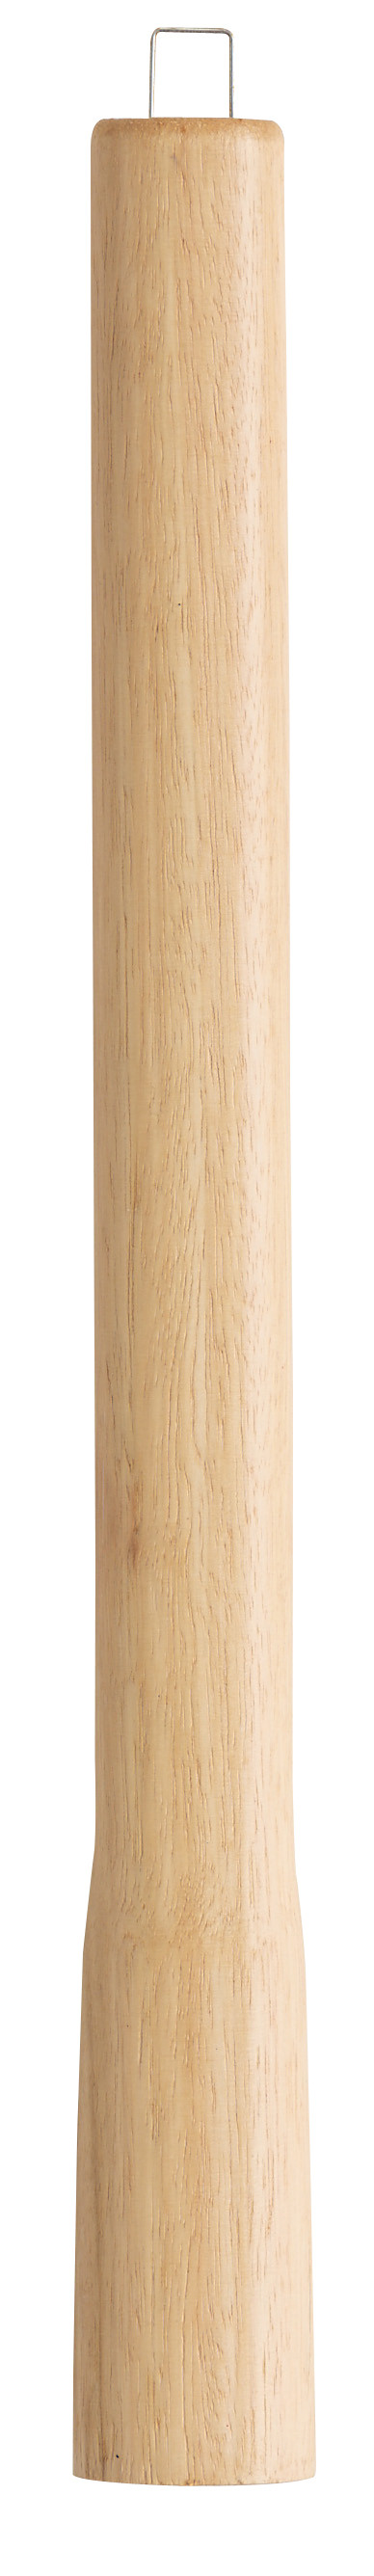 Manche de rechange en bois 37 cm - certifié PEFC 100%